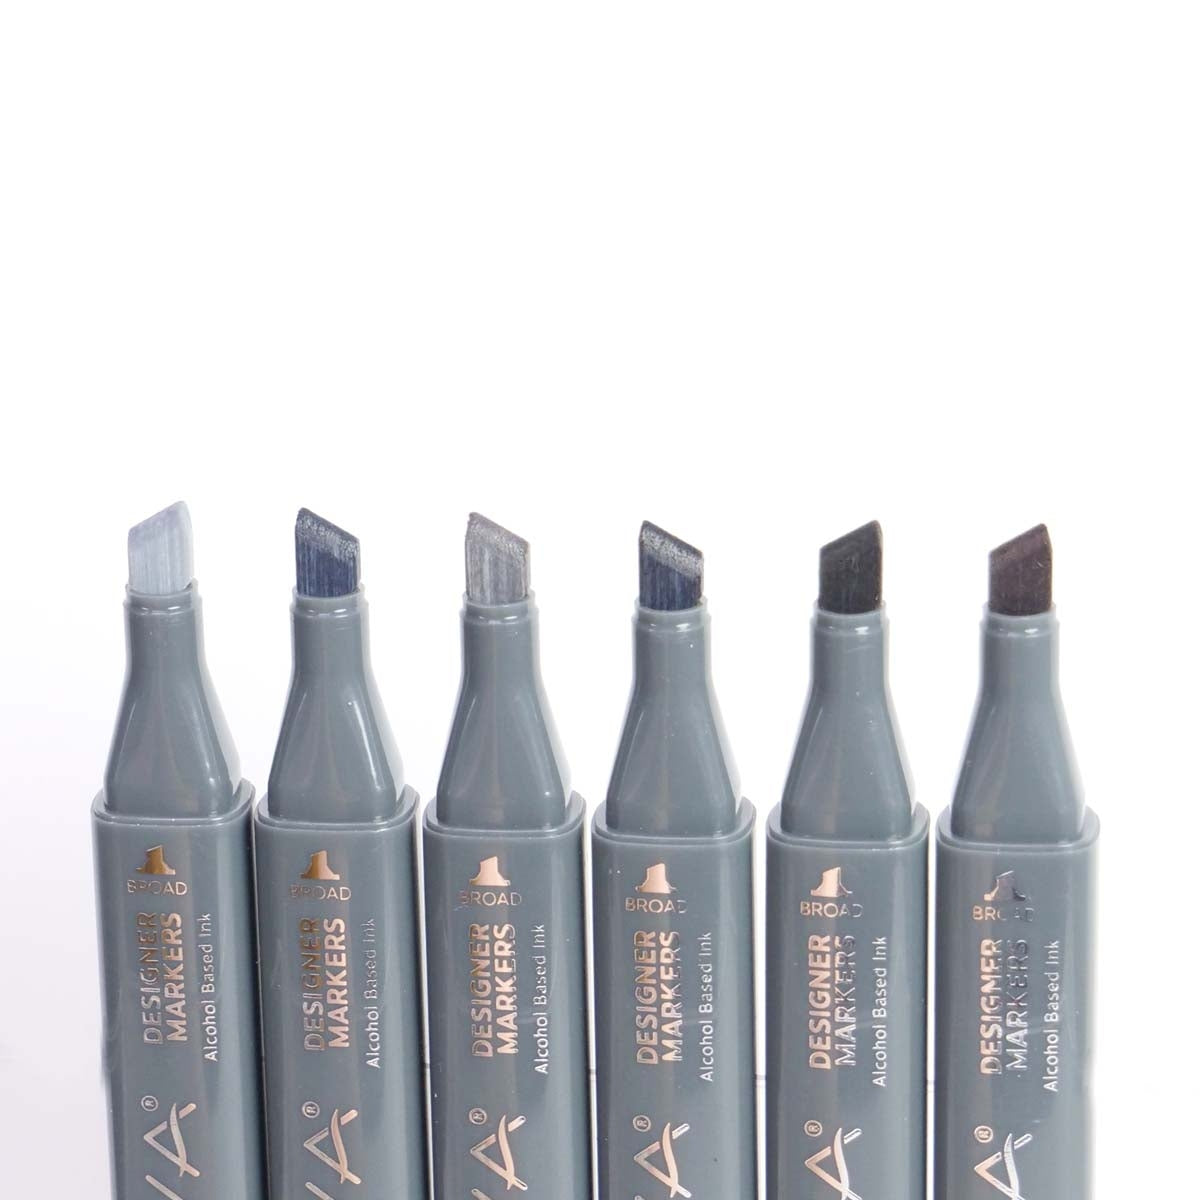 Nova - Designer Markers - Dual Tip - Alcohol Based - 6 Pack - Greys